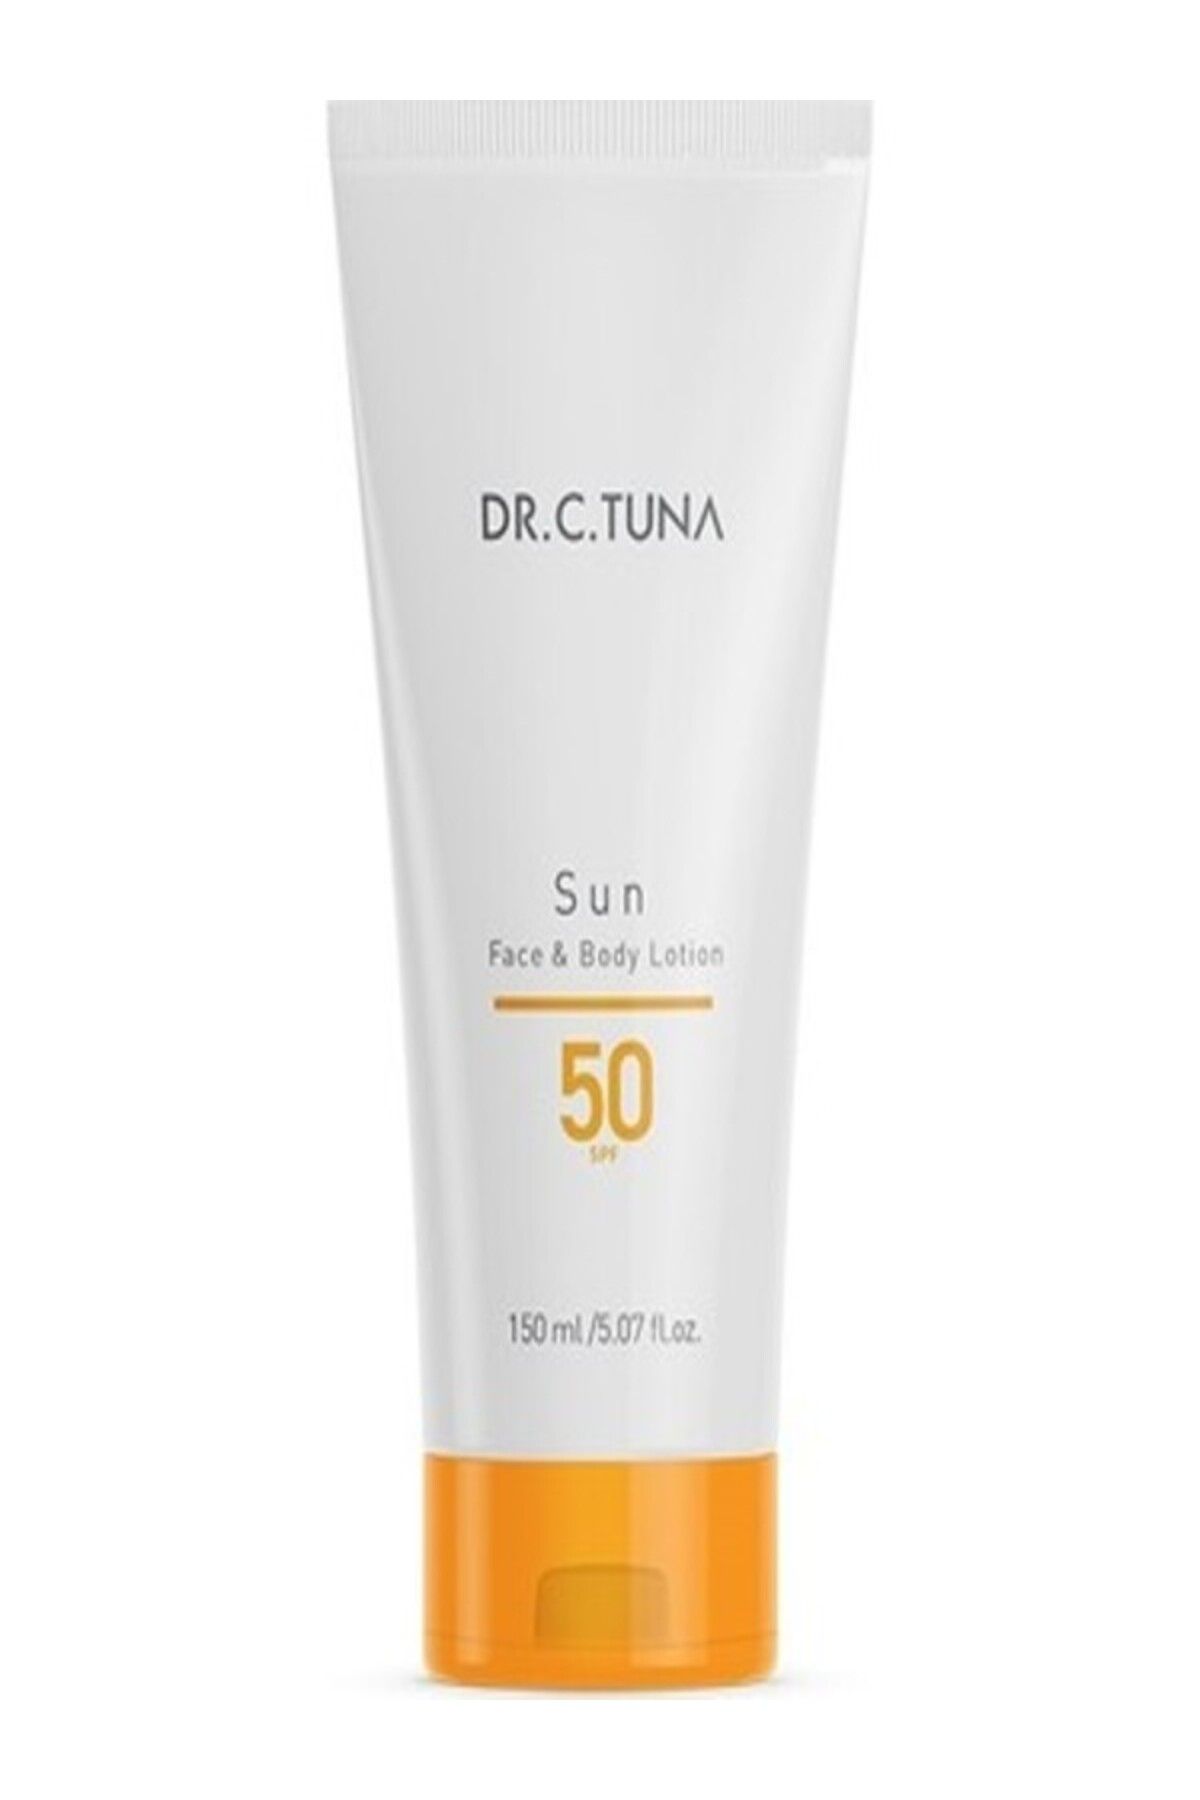 Farmasi Dr.C.Tuna Sun Serisi Vücut Losyonu 50 SPF | Suya Dayanıklı | Hassas Ciltler için